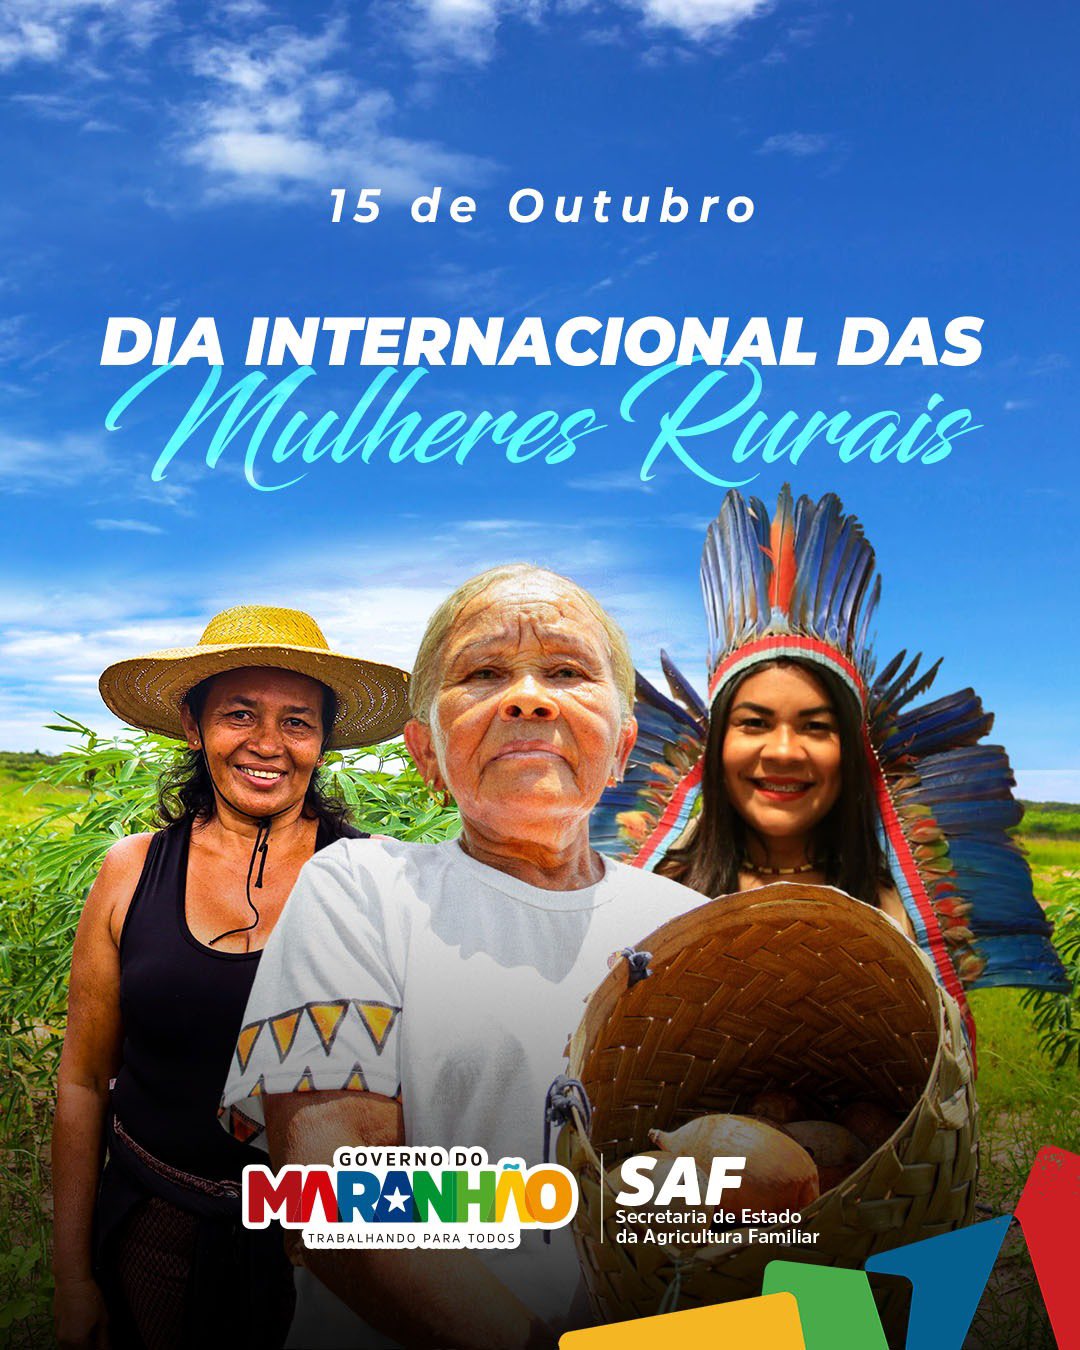 AGERP participa 1ª Feira Maranhense da Agricultura Familiar em São